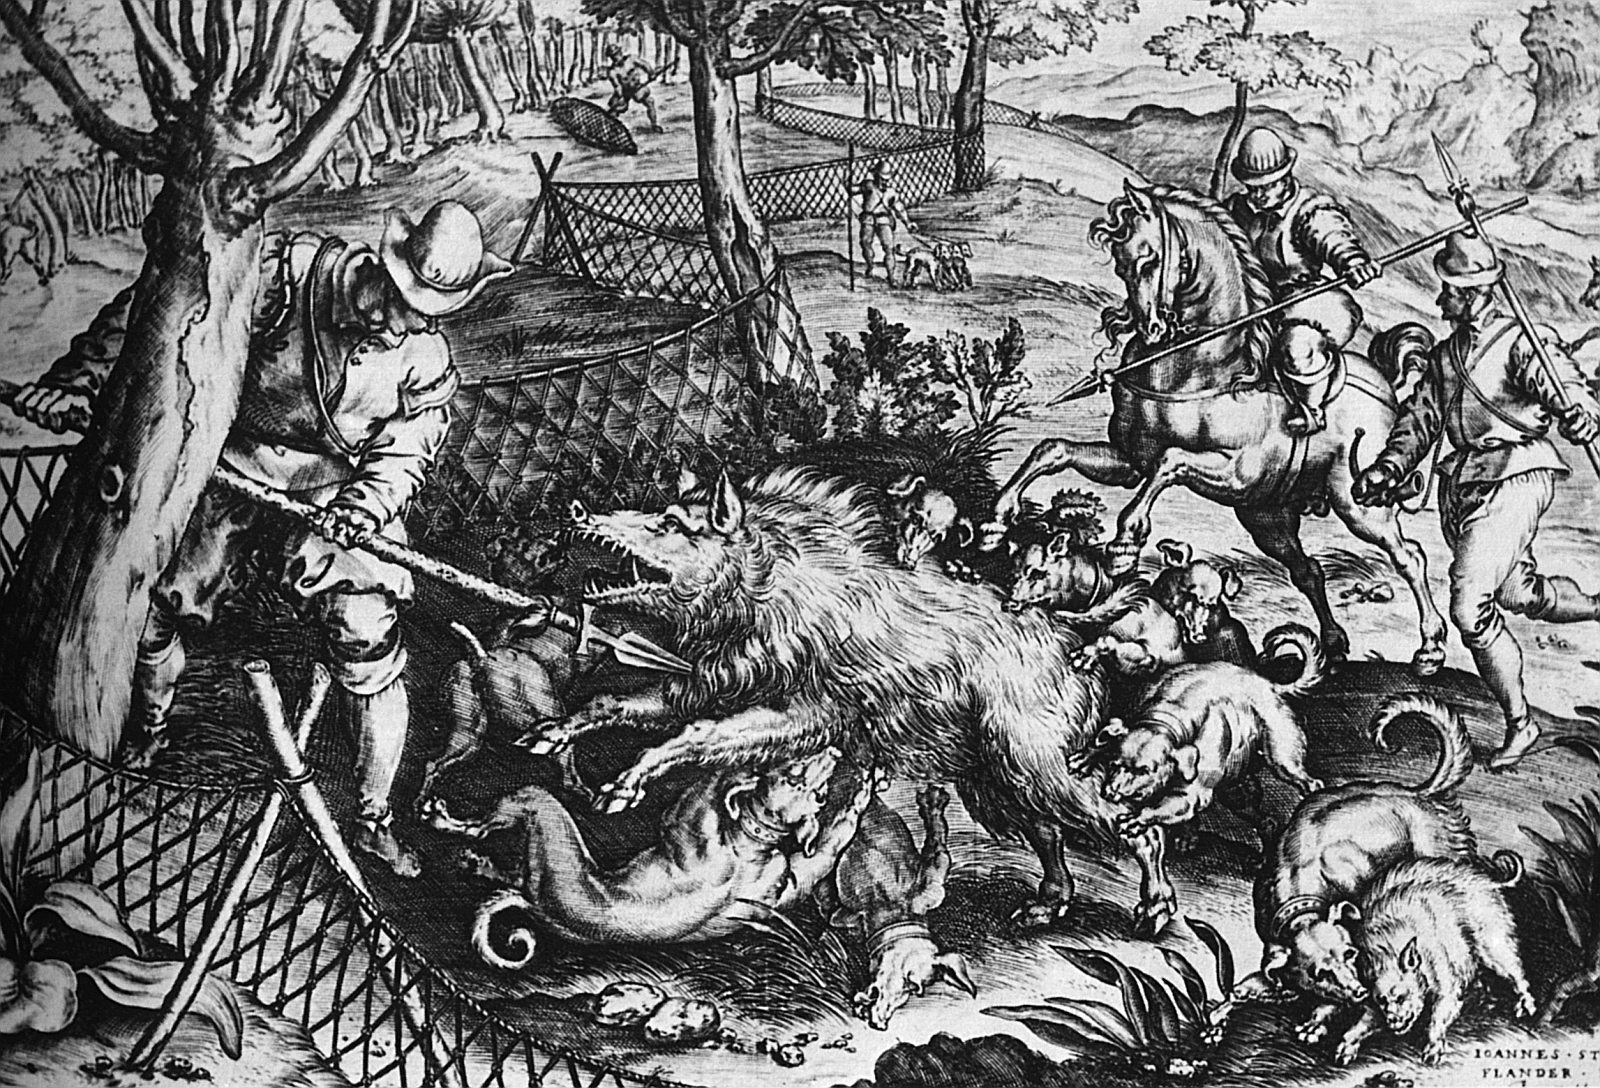 Saujagd im 16. Jahrhundert. Ein niederländischer Stich, der eine lebendige Szene aus Reitern, Knechten, Jagdhunden und einem Wildschwein zeigt.